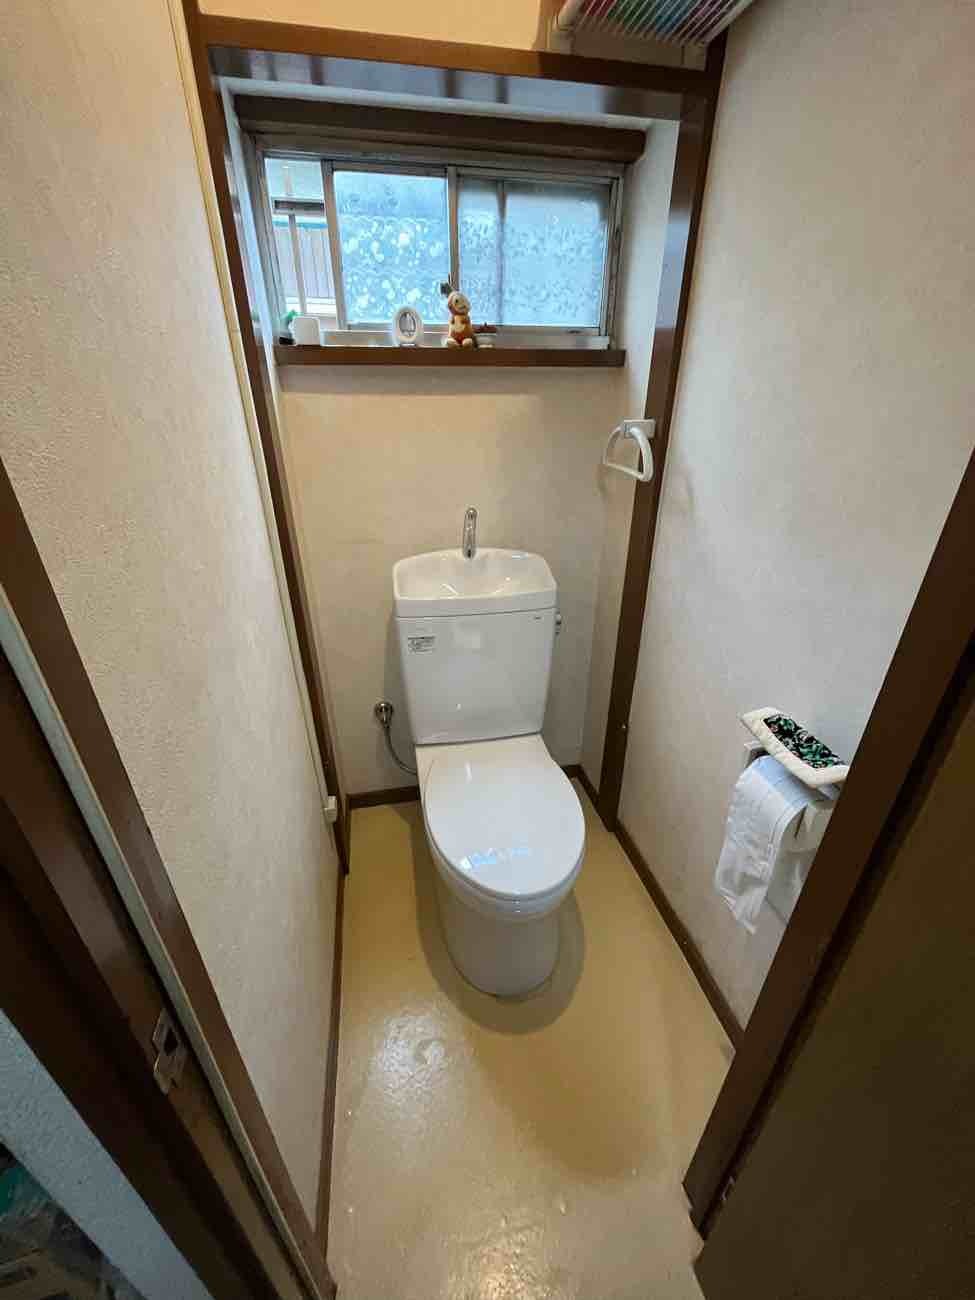 【埼玉県三郷市】A様邸トイレ交換工事が完了しました。TOTO ピュアレストQR 画像